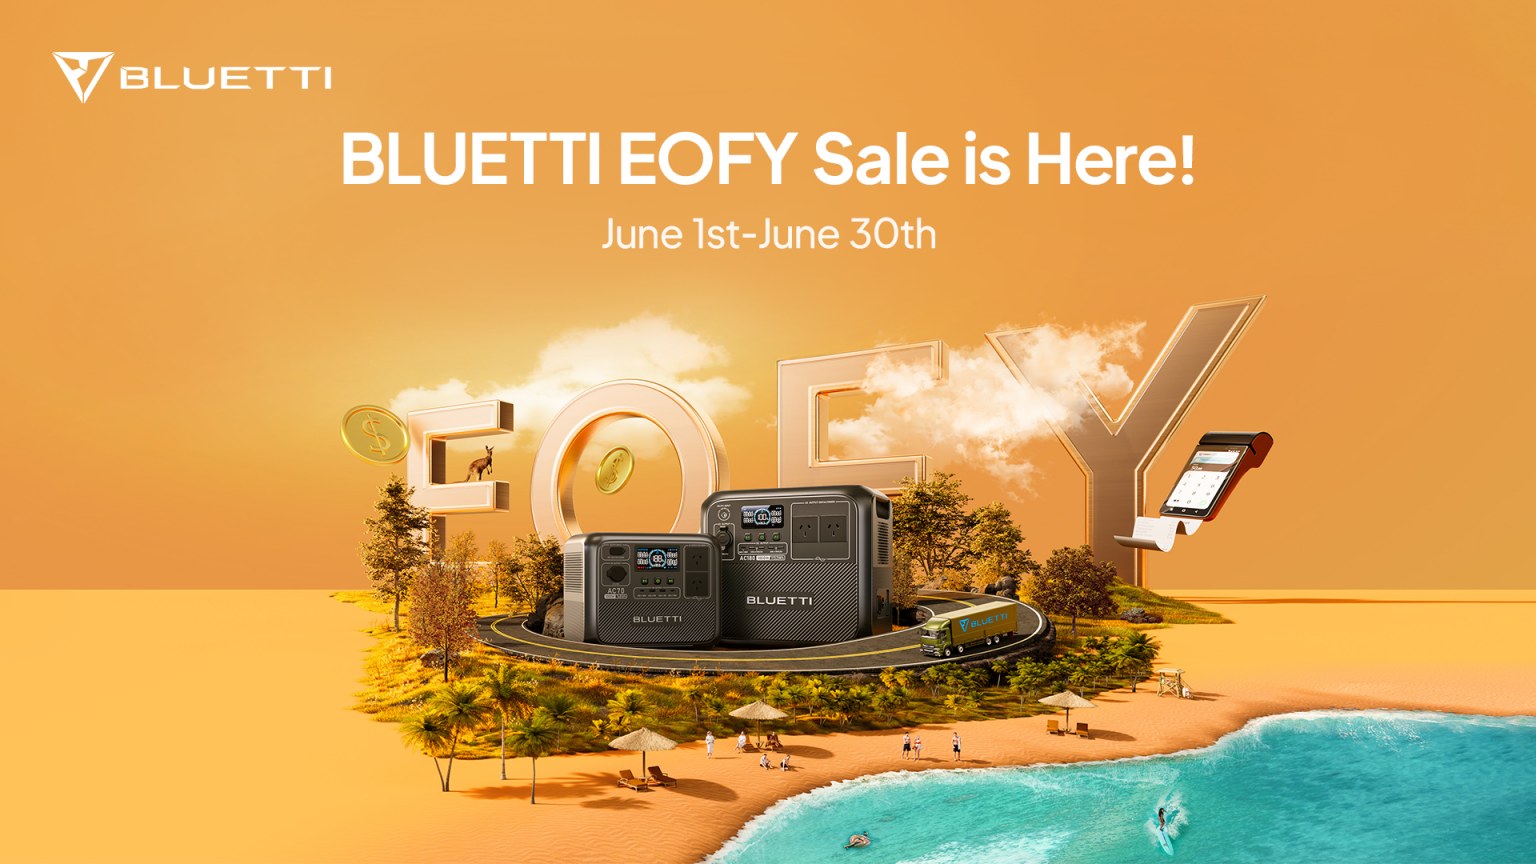 a0880fe5/bluetti eofy deals 3 png